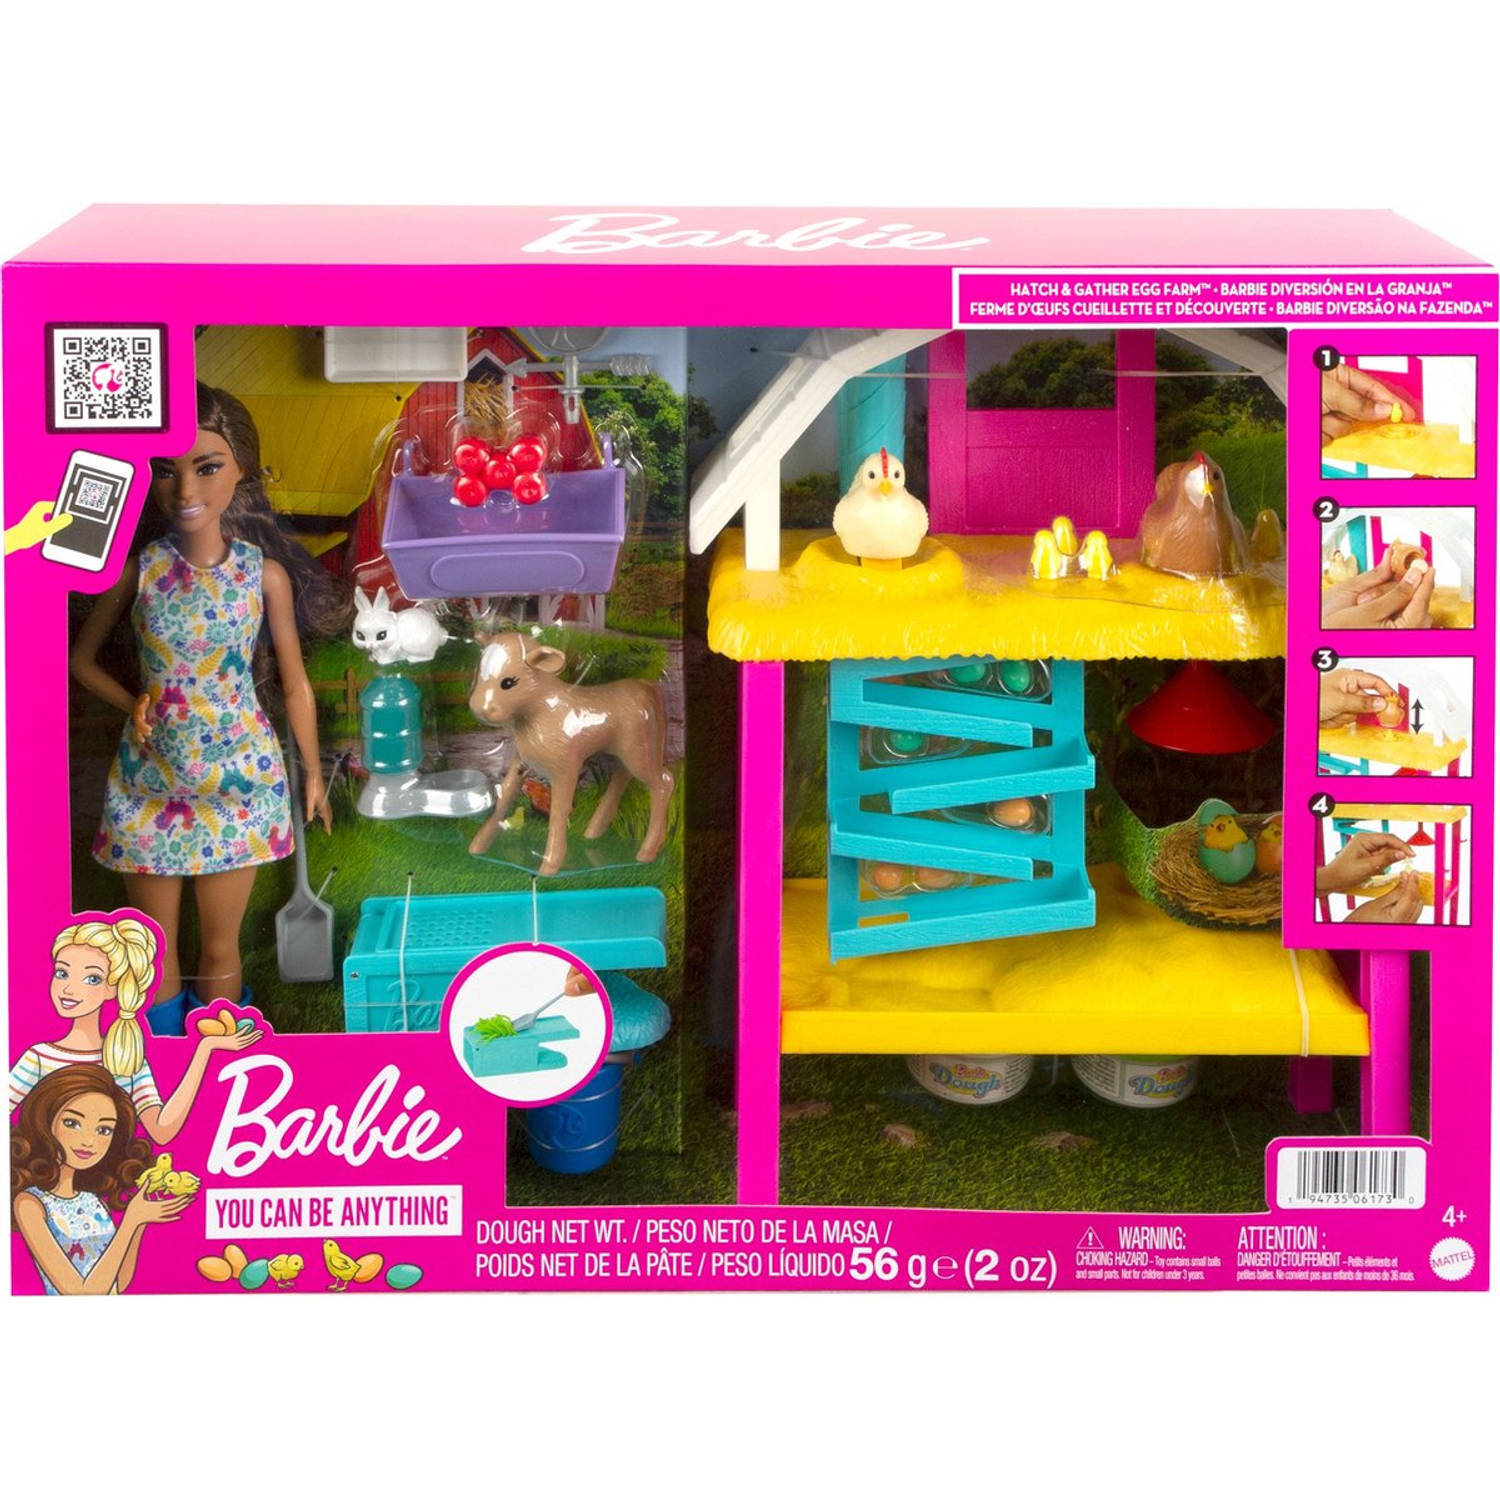 Barbie Broed En Verzamel Kippenboerderij Speelfigurenset